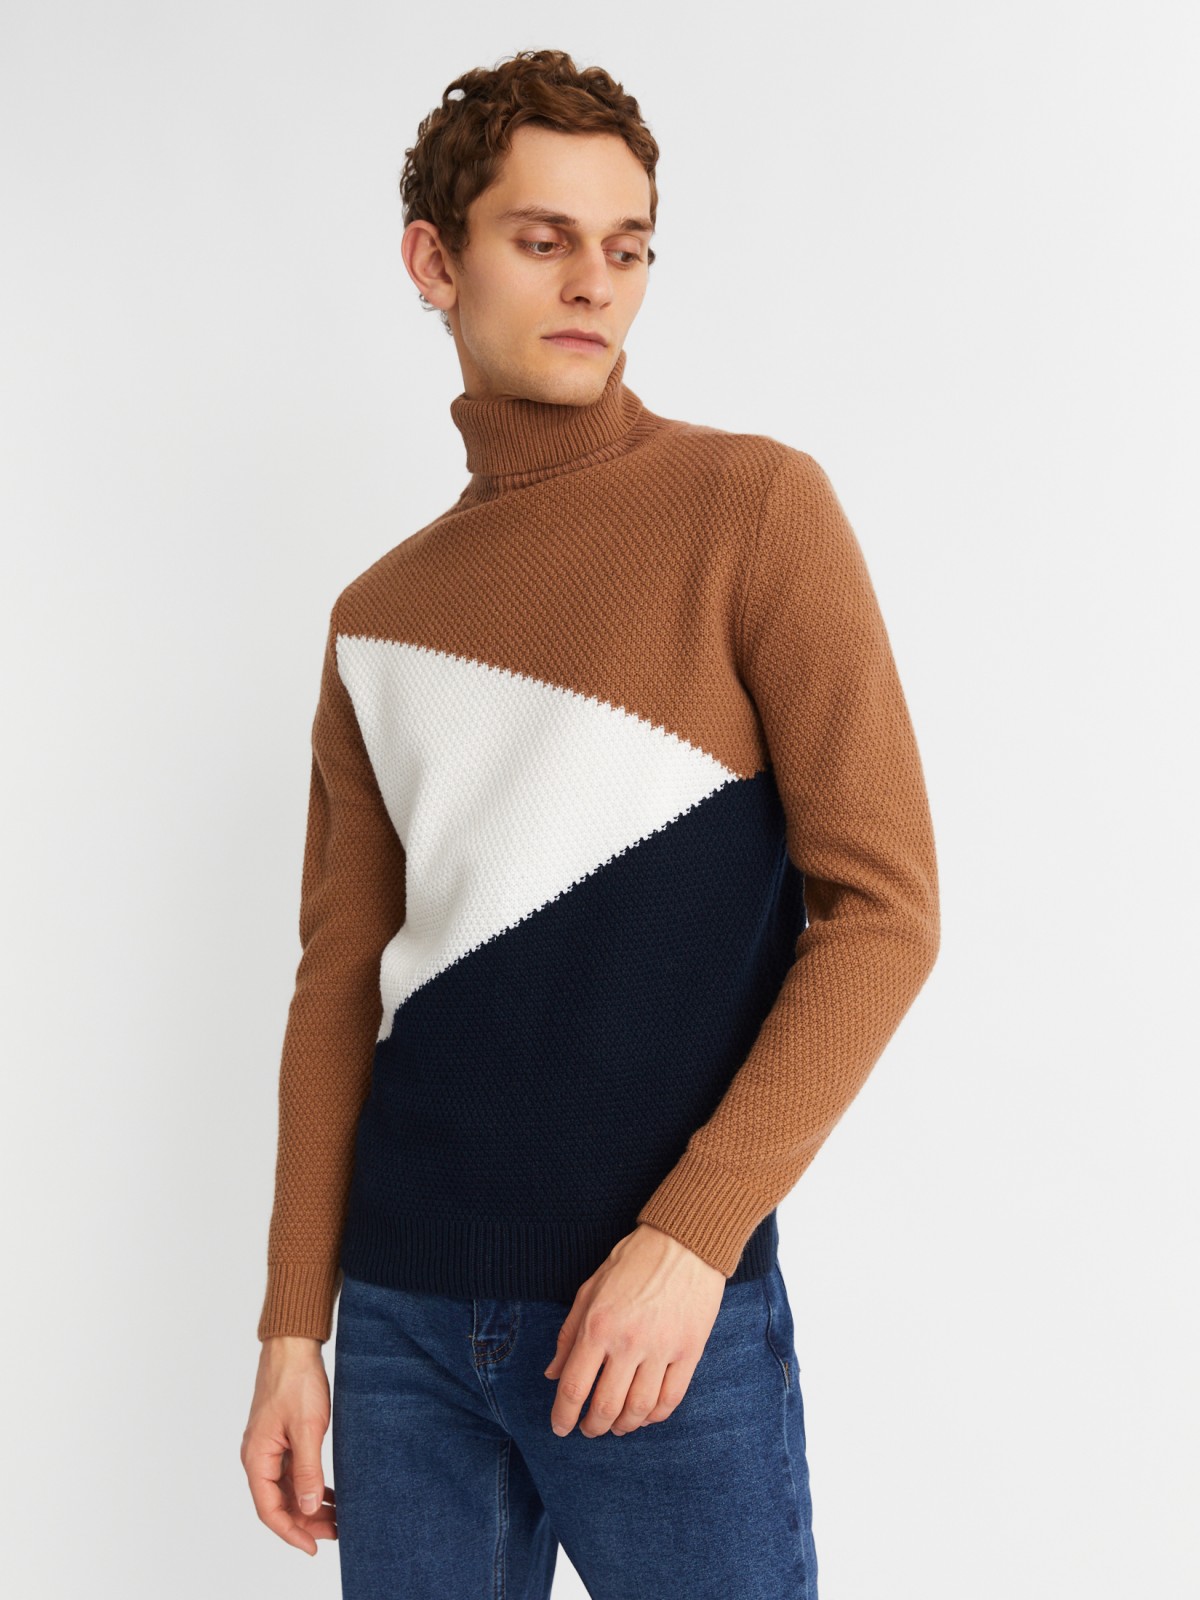 Вязаная шерстяная водолазка-свитер в стиле Color Block zolla коричневого цвета